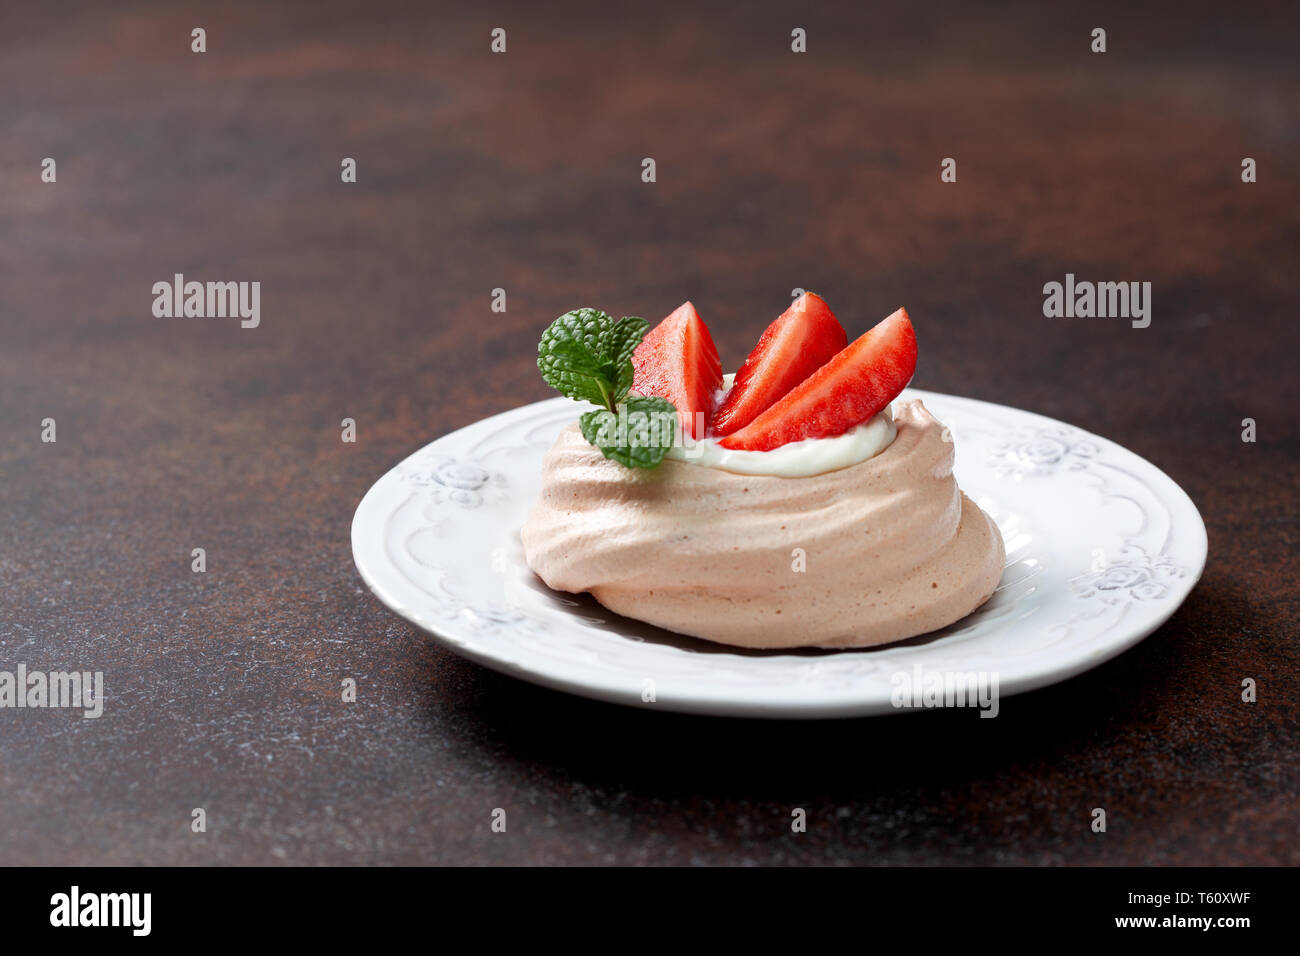 Minis gâteaux au chocolat pavlova fraises close-up Banque D'Images